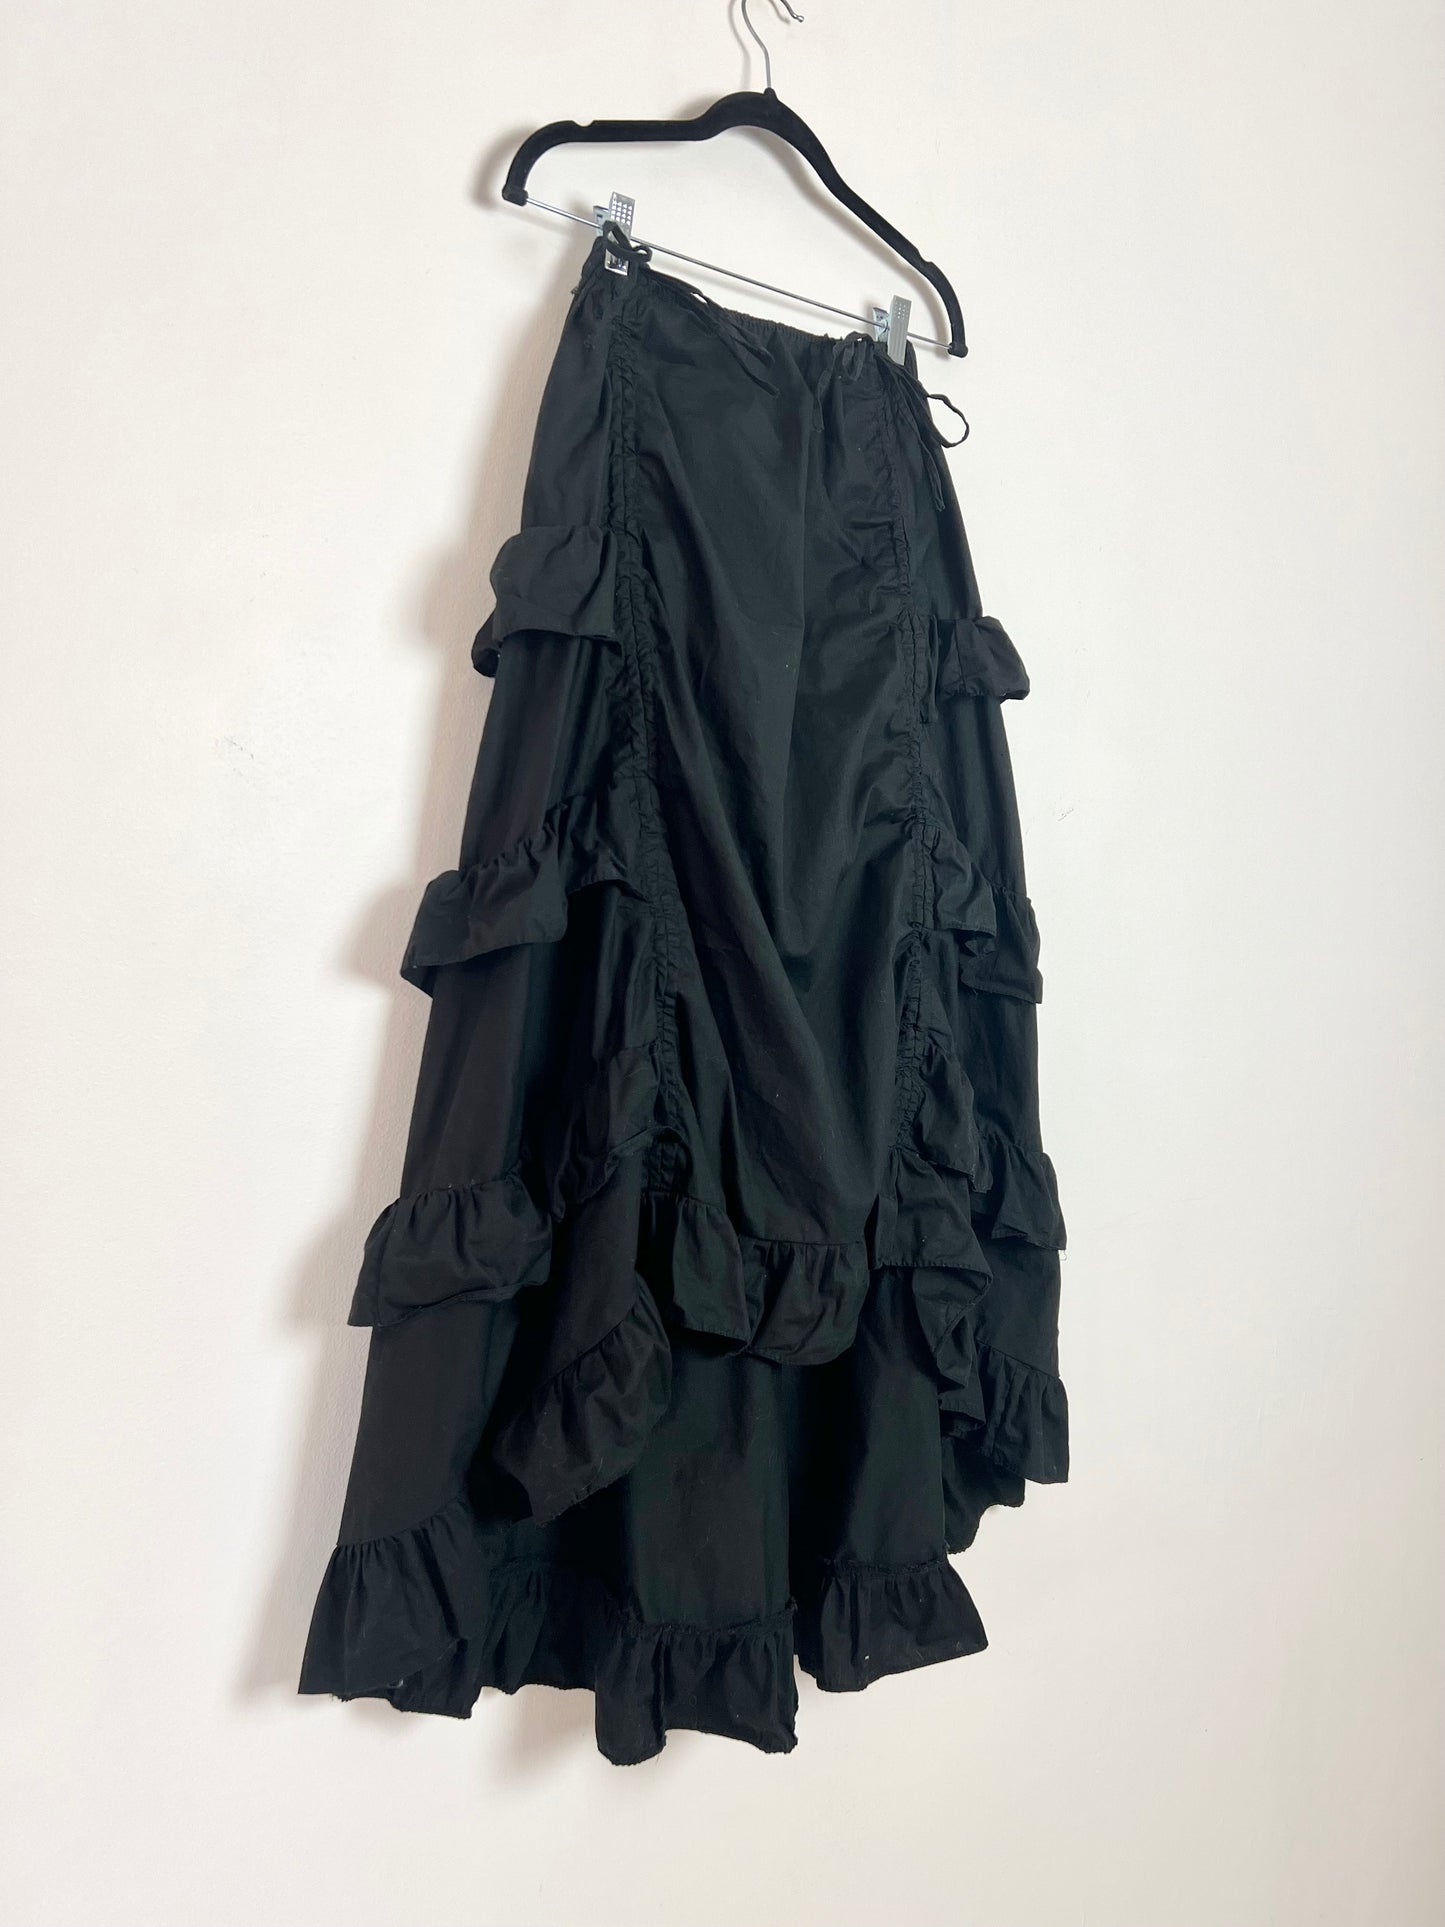 Euro Inspired Belle Poque Max Skirt